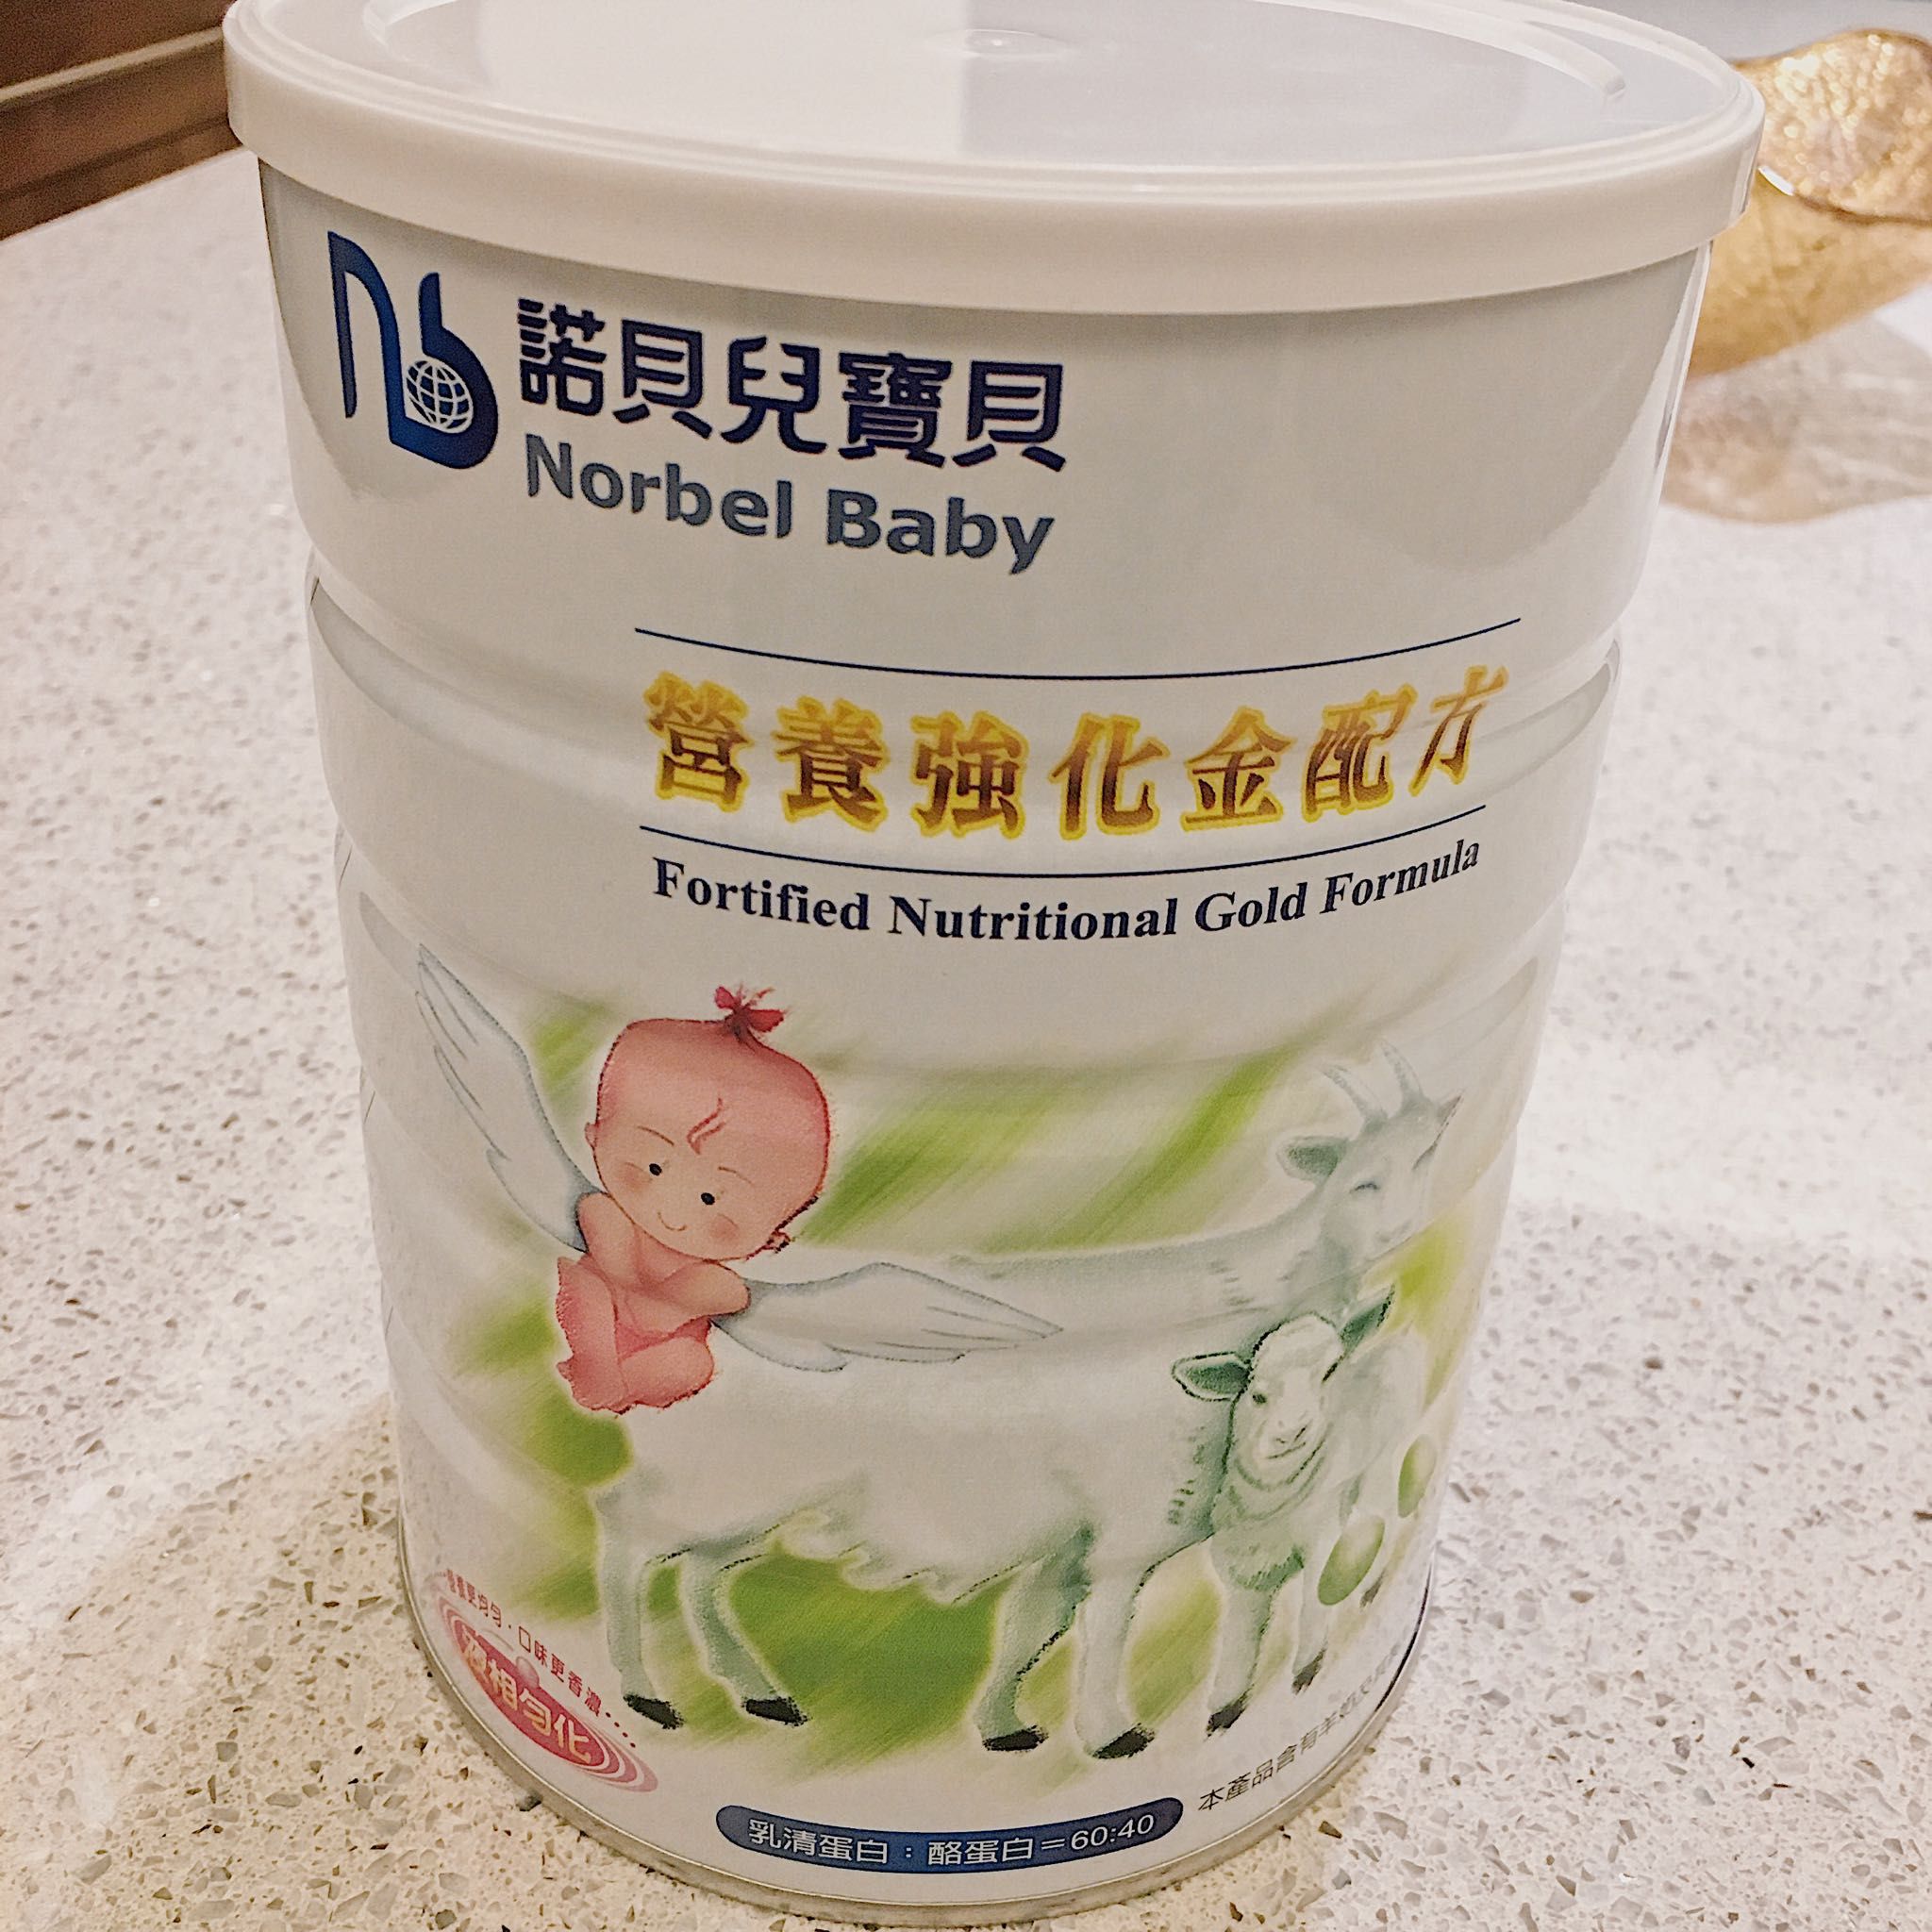 售 諾貝兒寶貝 營養強化金配方 羊奶粉